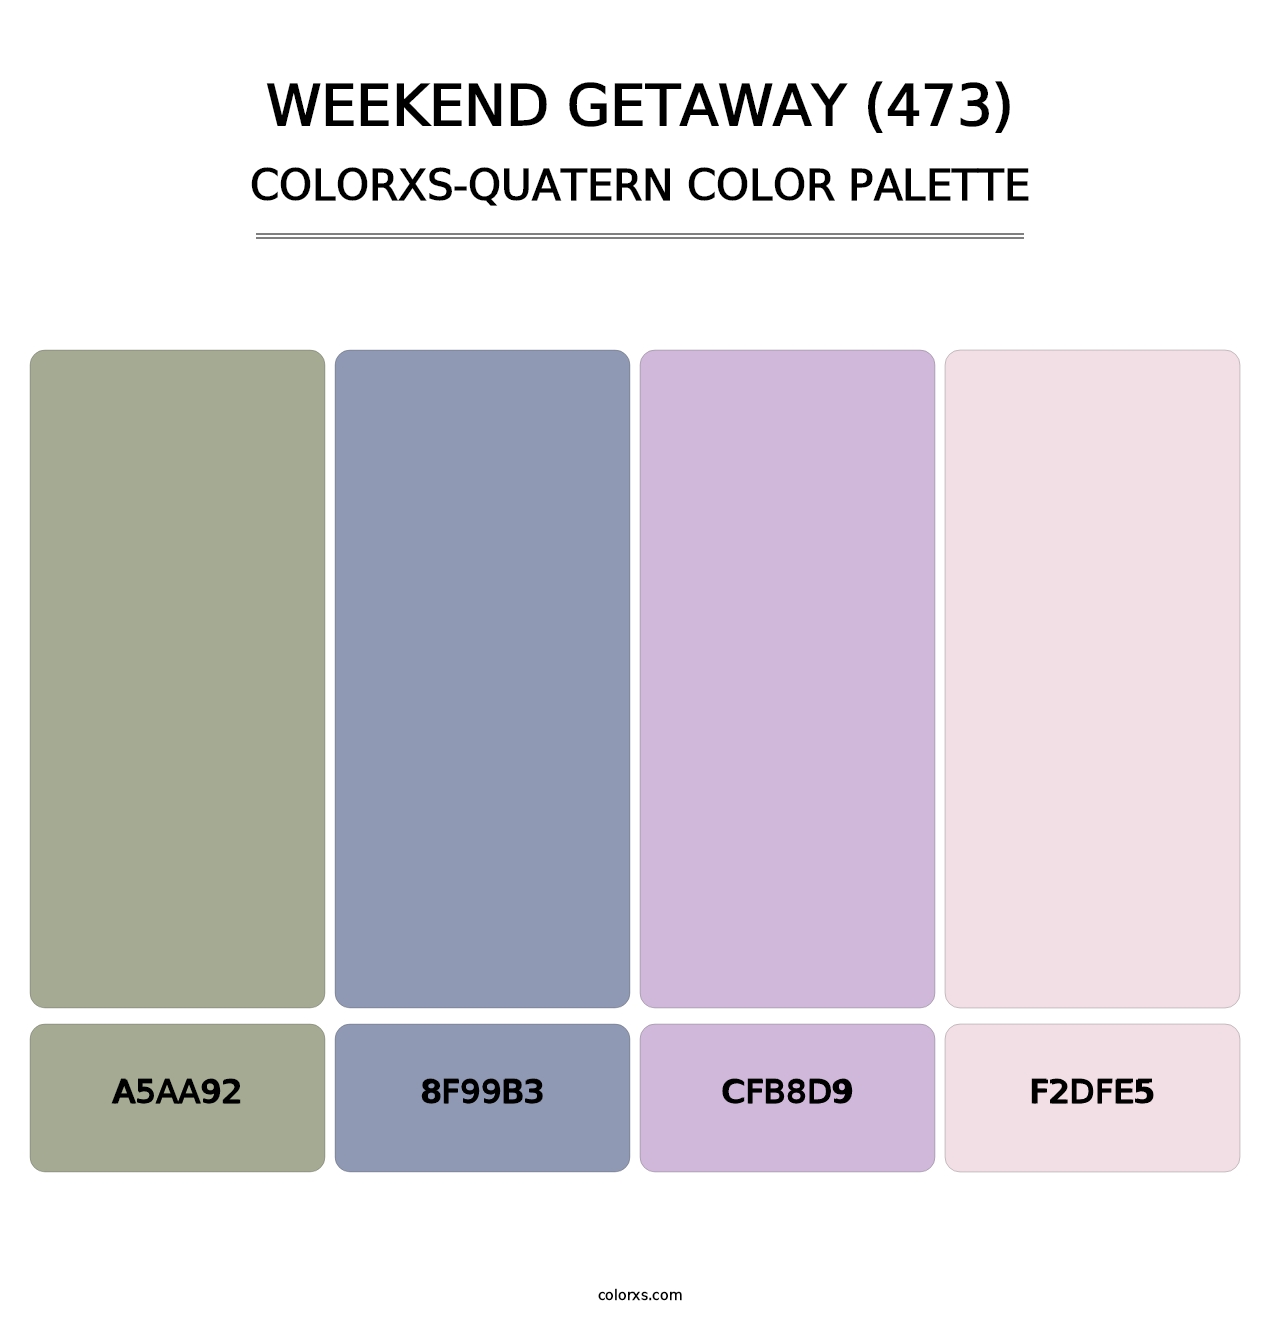 Weekend Getaway (473) - Colorxs Quatern Palette